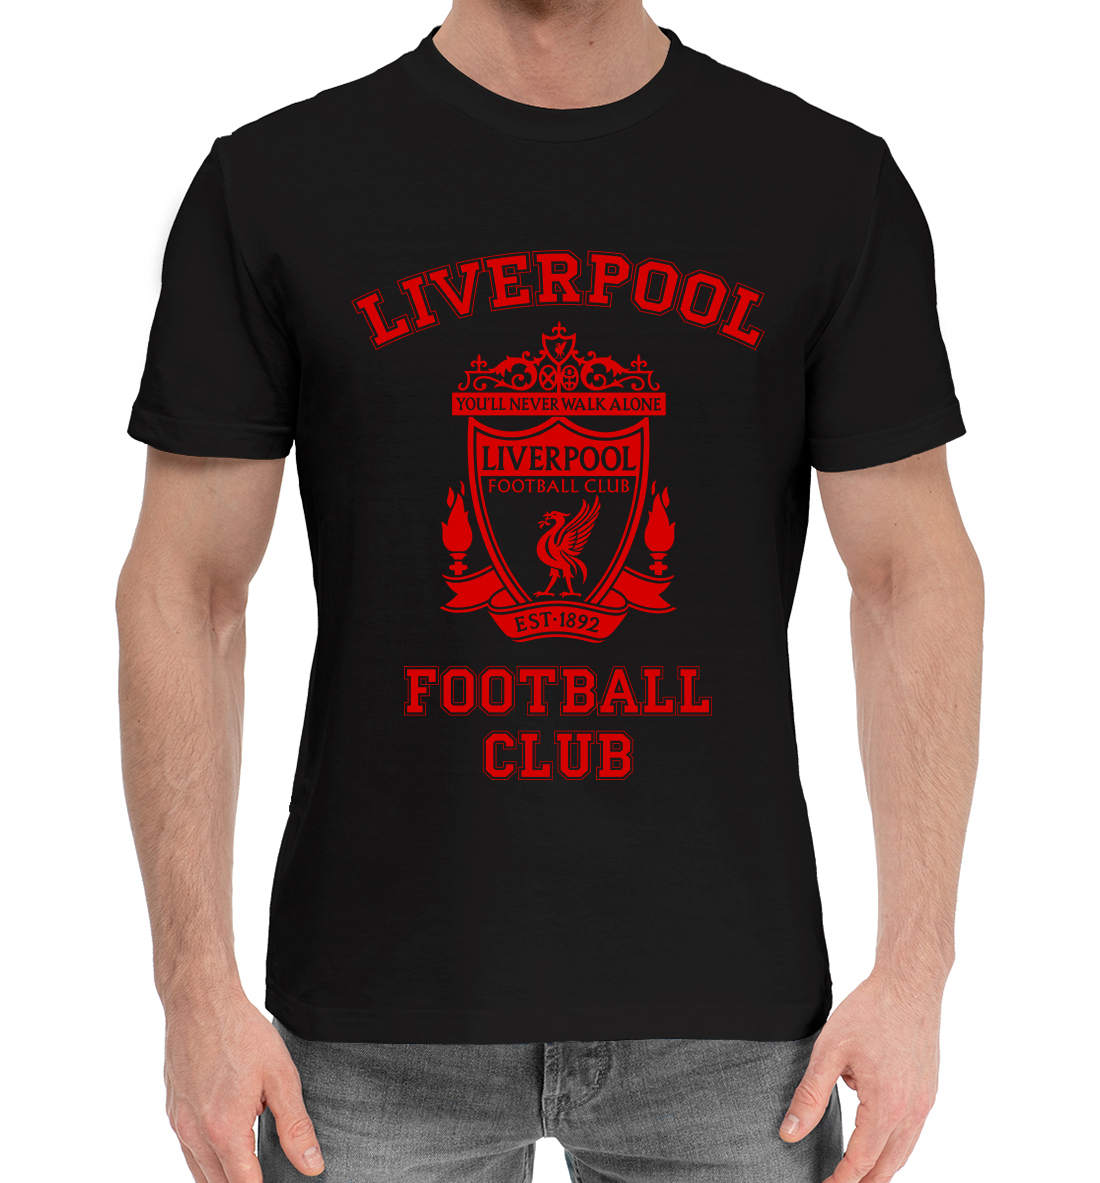 Хлопковая футболка Liverpool LVP-317191-hfu-2